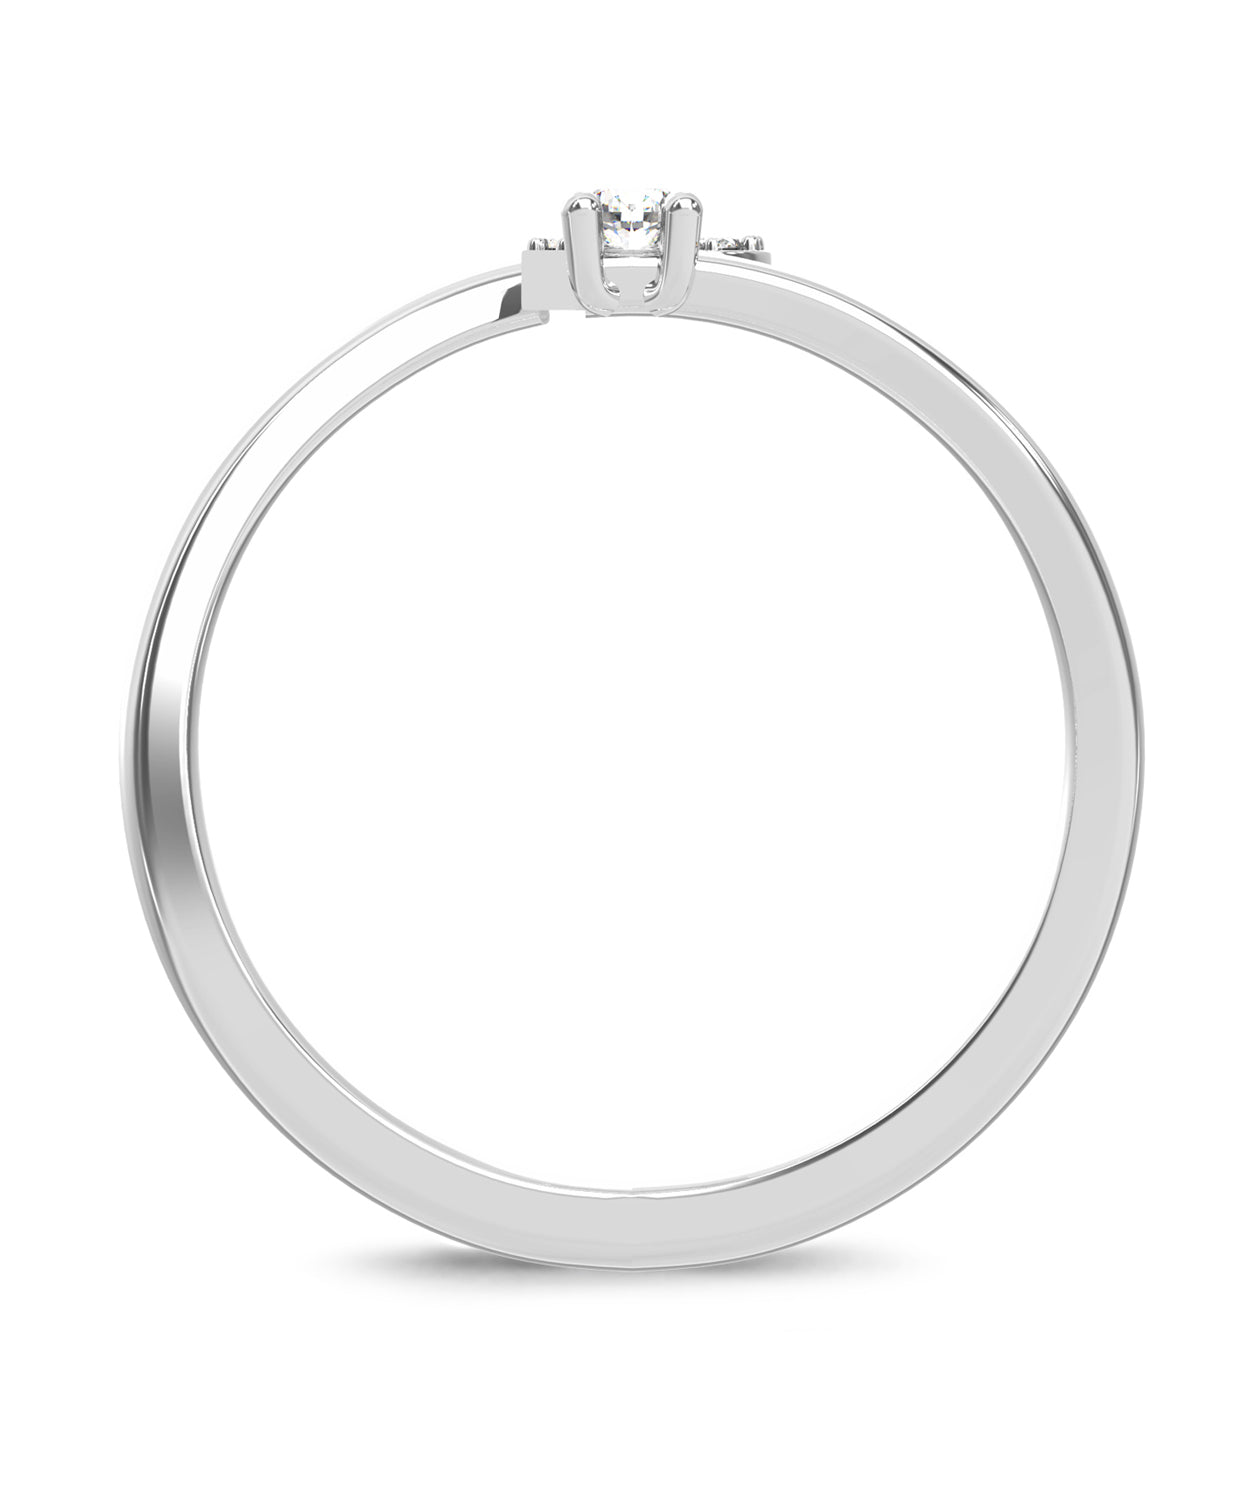 ESEMCO Diamond 18k White Gold Letter P Initial Open Ring View 2